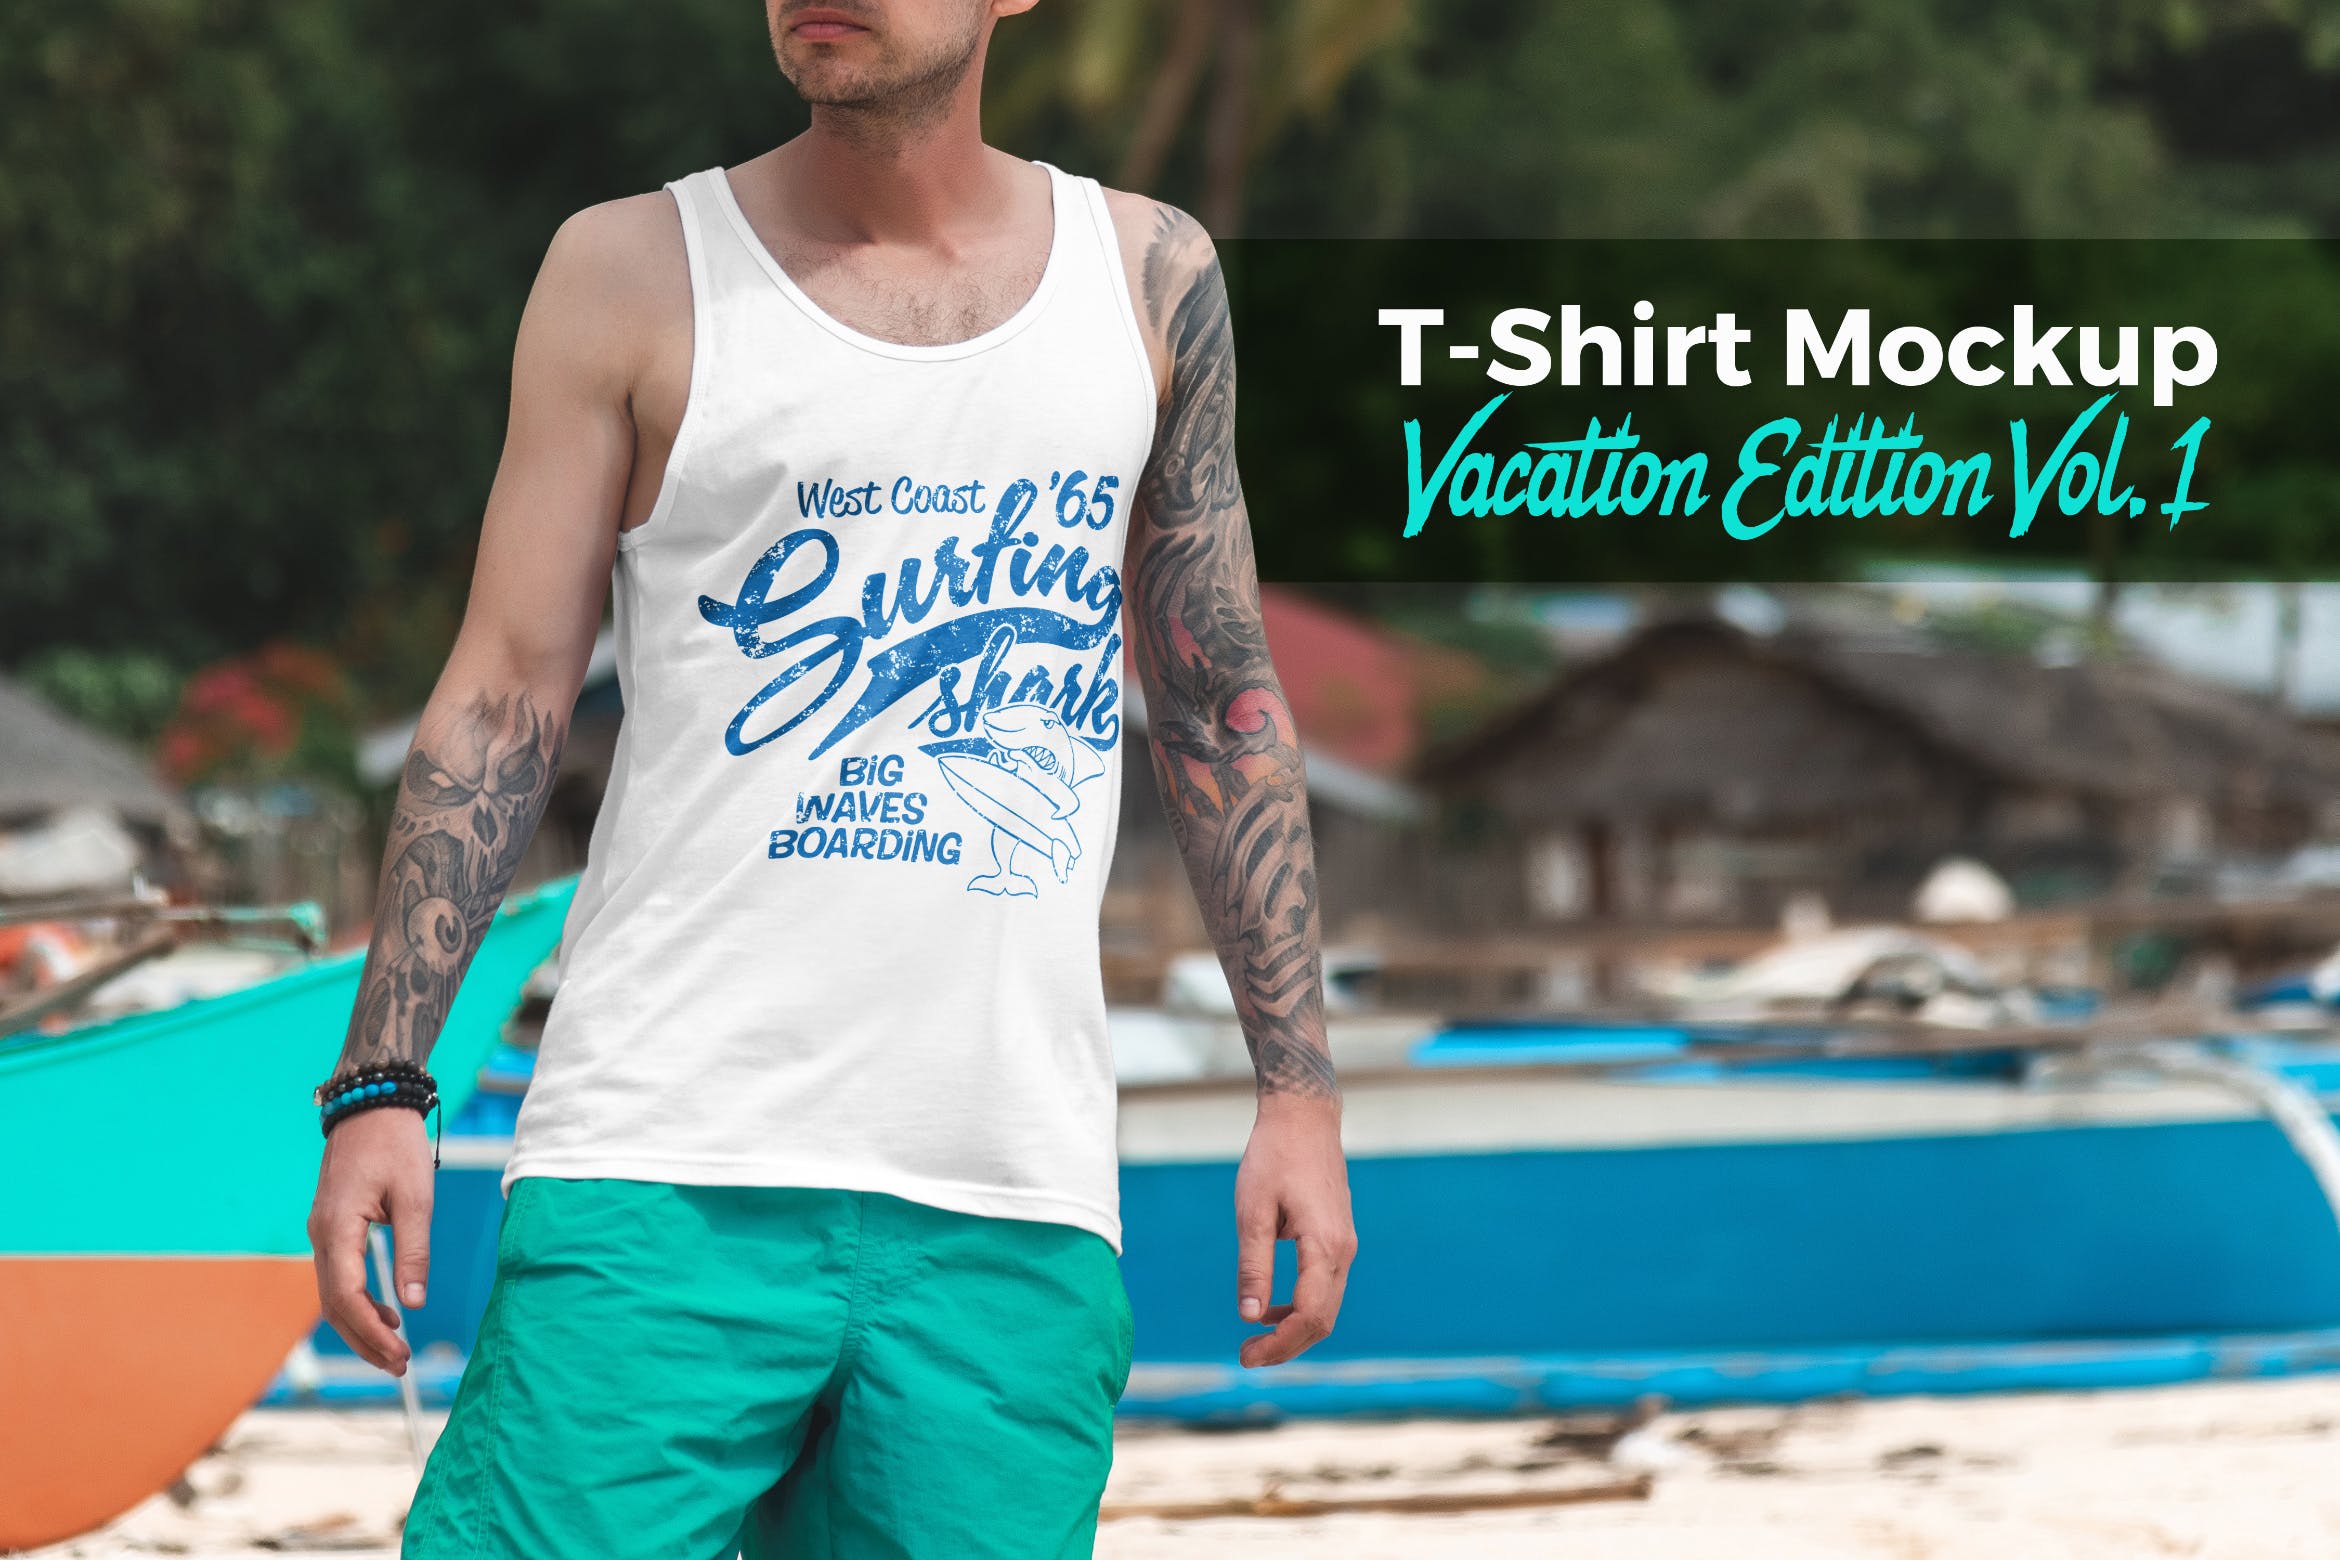 度假系列-休闲服装印花图案设计展示样机素材库精选v1 T-Shirt Mockup Vacation Edition Vol. 1插图